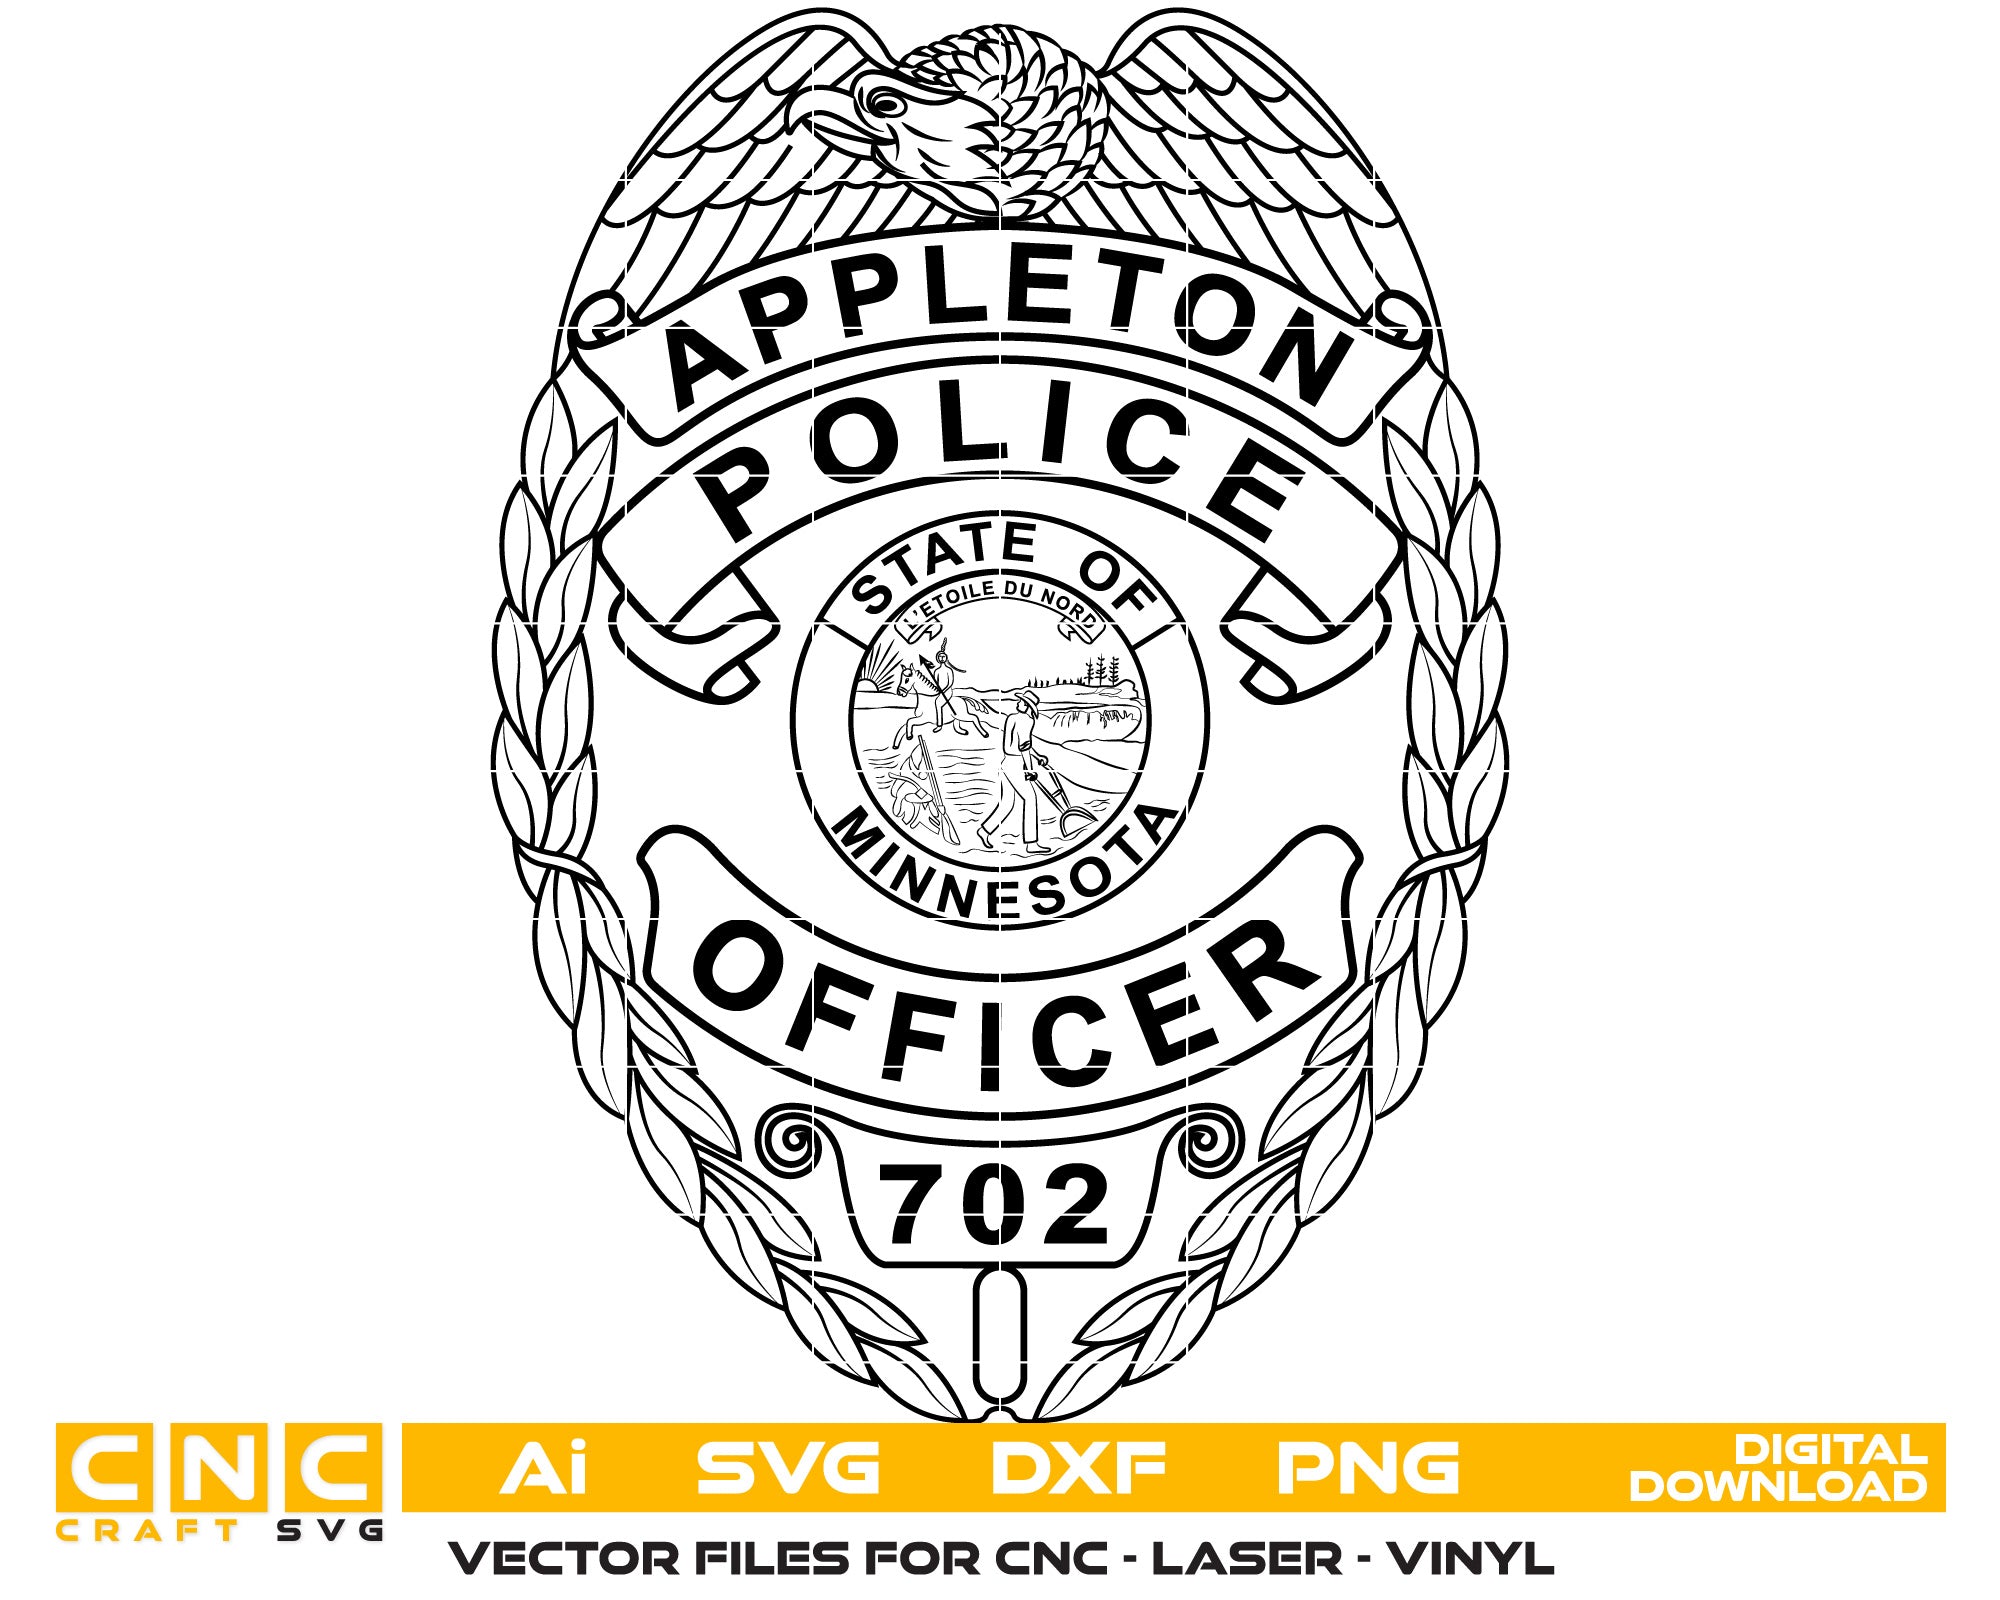 Appleton Police Officer Badge Vector Art, Ai,SVG, DXF, PNG, Digital Files